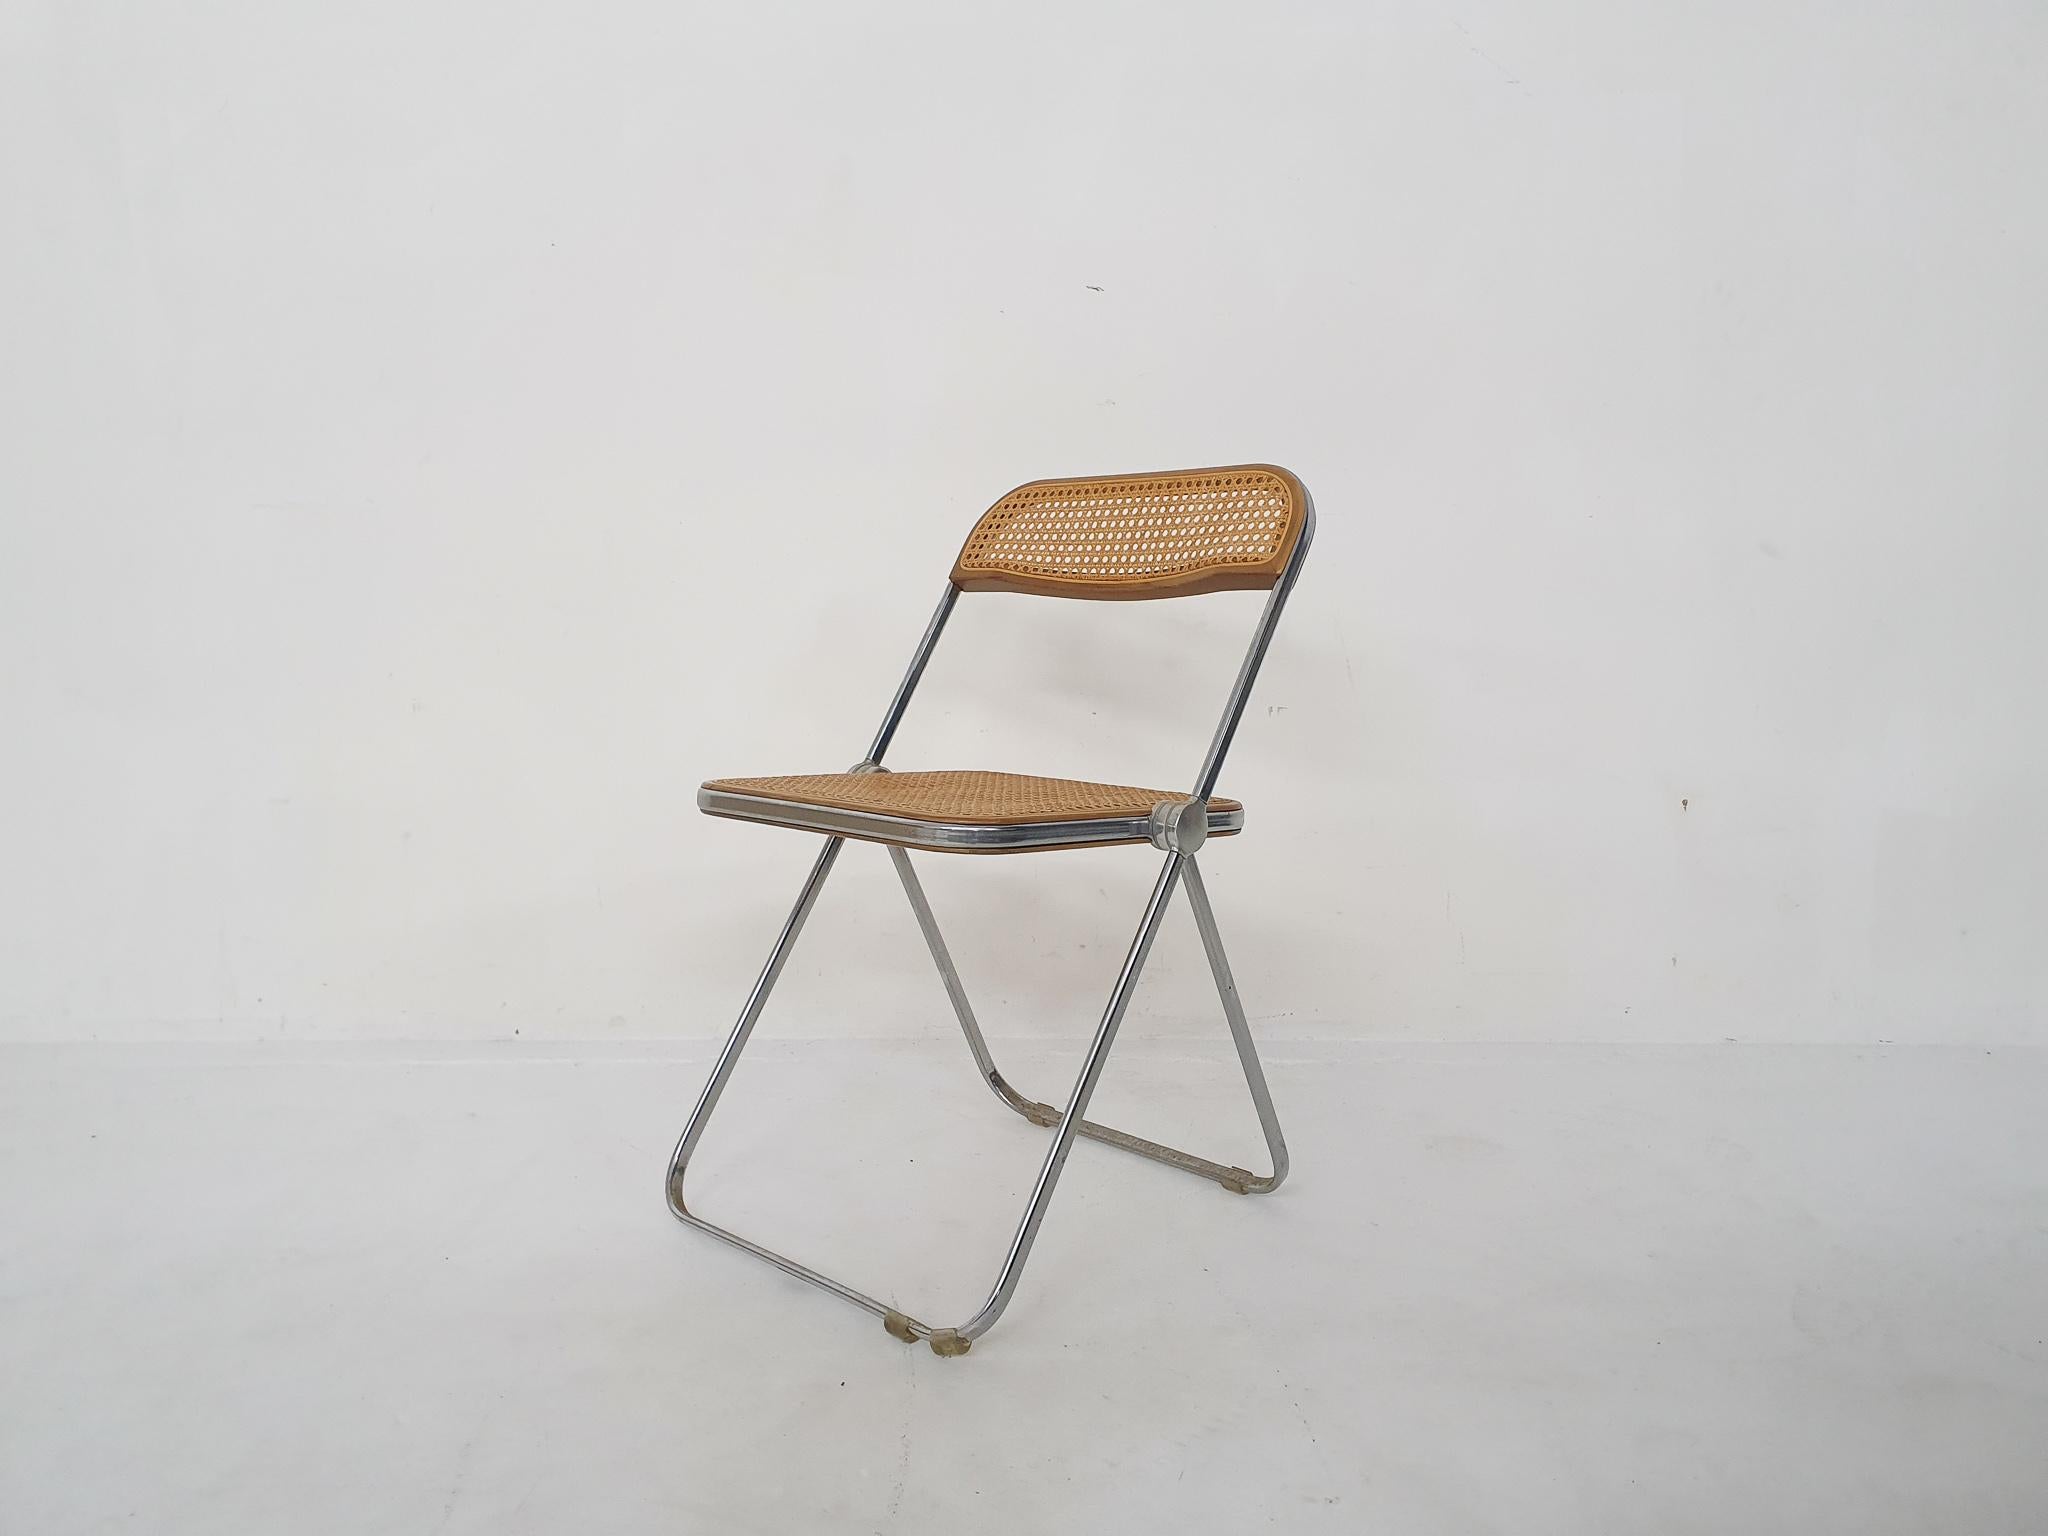 Vintage Plia Klappstuhl mit Sitzfläche und Rückenlehne aus Gurtband, entworfen von Ginacarlo Piretti für Castelli.
In gutem Zustand mit Gebrauchsspuren.
Maße in gefaltetem Zustand: 5 x 47 x 89 cm.